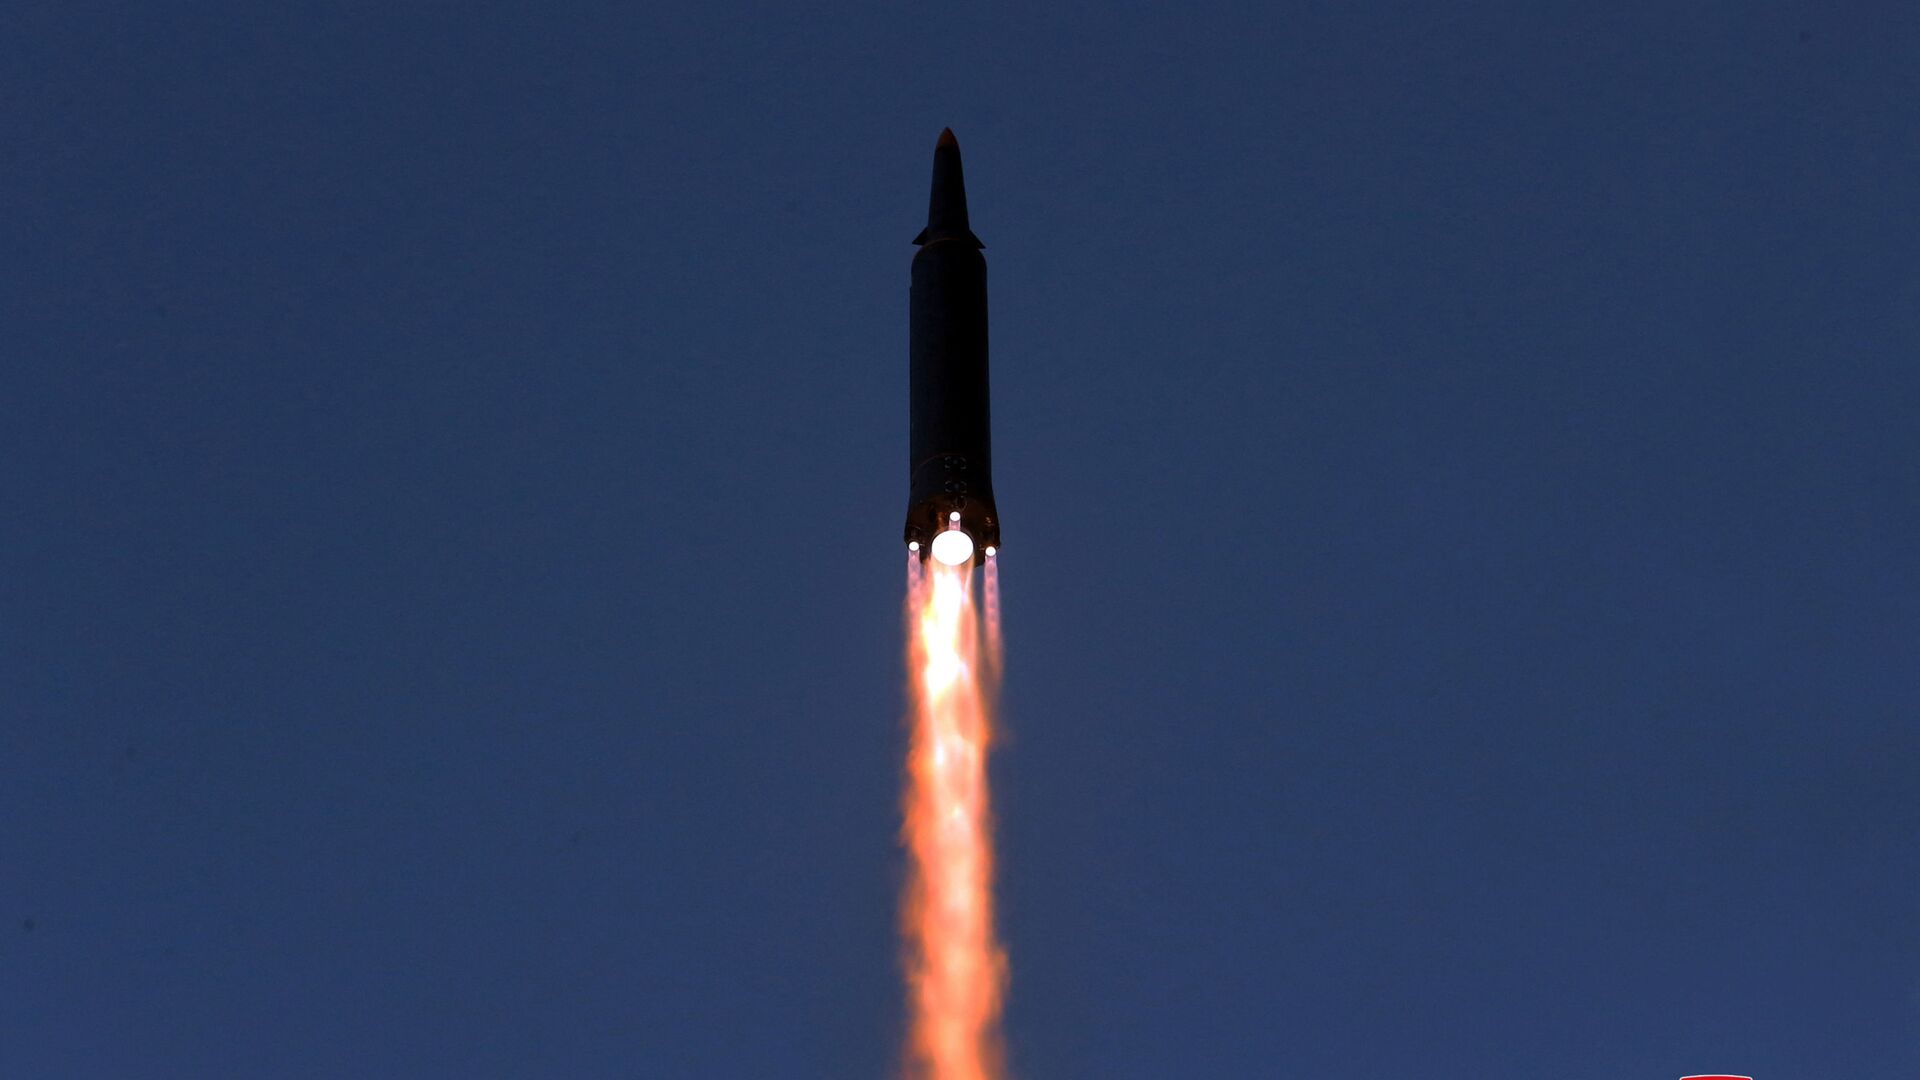 اختبار إطلاق صاروخ تفوق سرعته سرعة الصوت في كوريا الشمالية، 11 يناير 2022  - سبوتنيك عربي, 1920, 14.01.2022